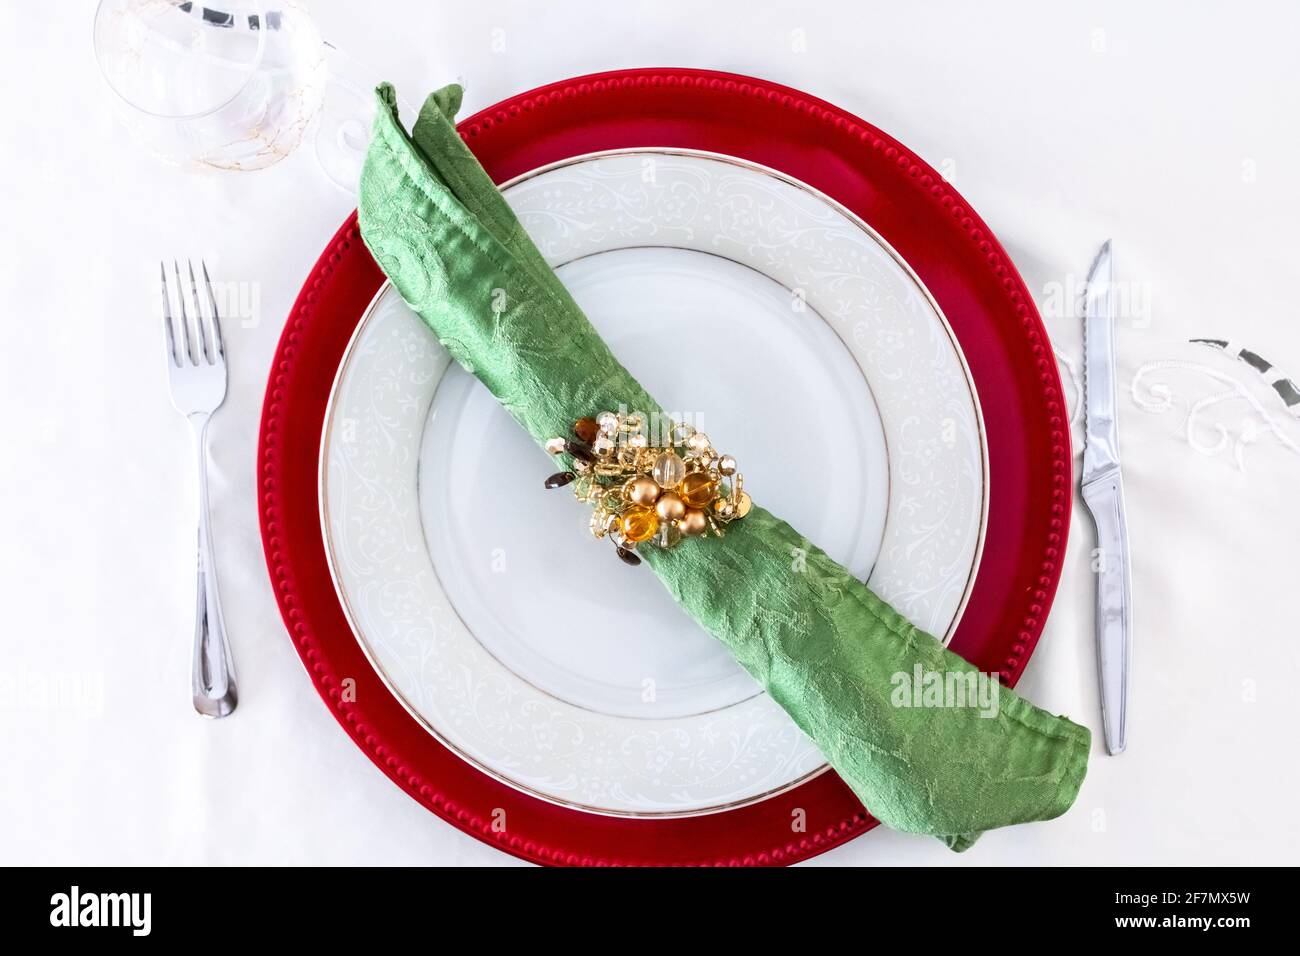 Eine grüne Serviette mit einem goldenen Serviettenring auf einer weißen Keramikplatte und weißem Tischtuch. Ort für ein Weihnachtsessen oder ein festliches Fest. Stockfoto